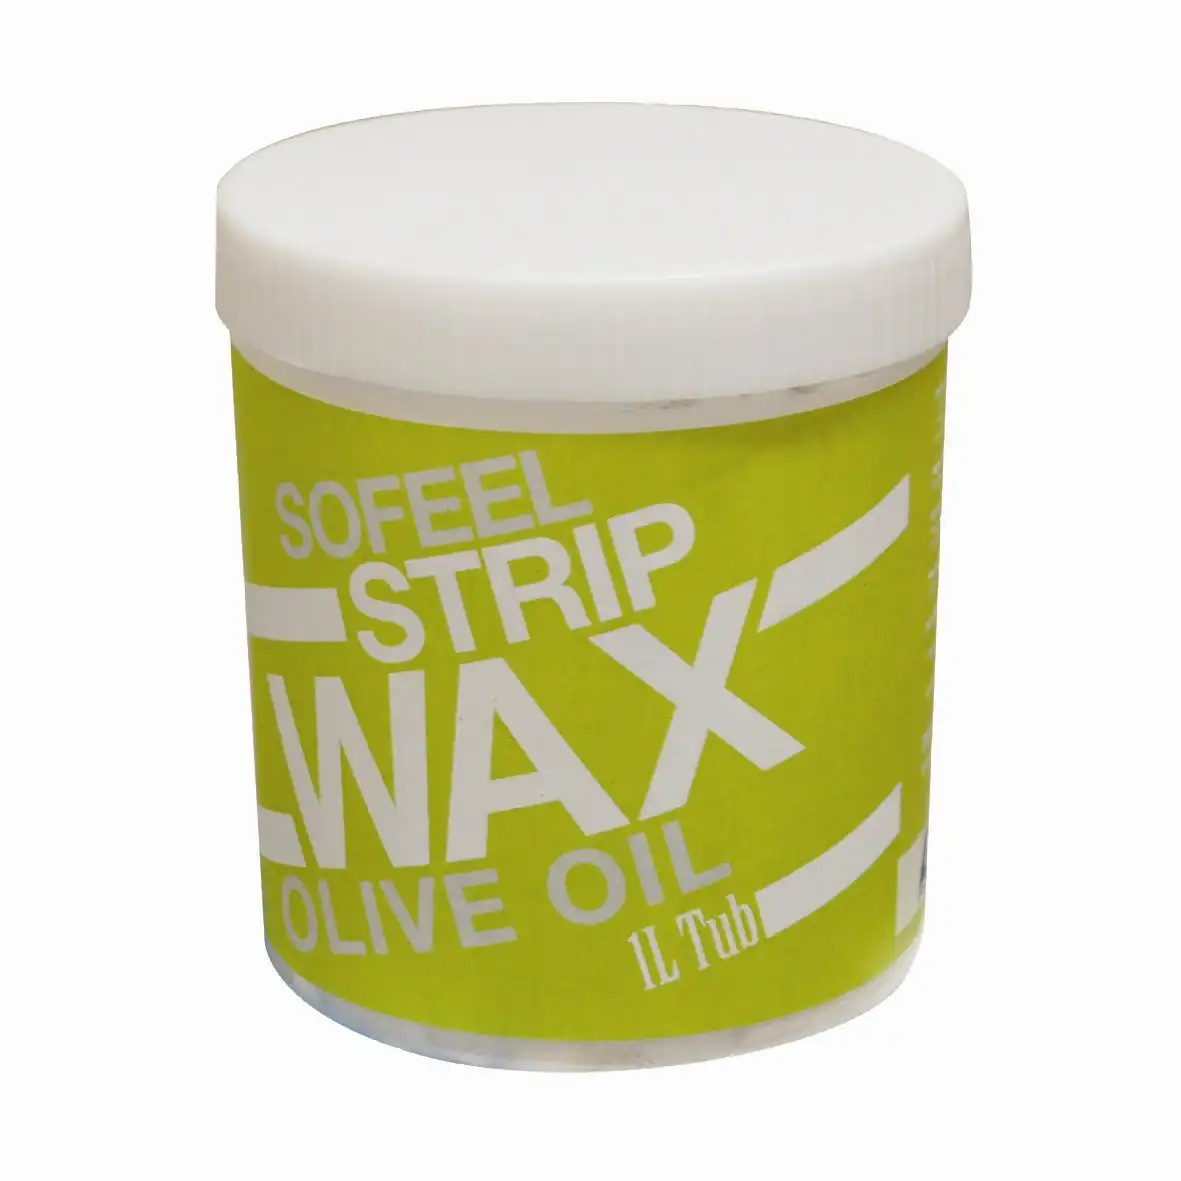 Sofeel Strip Wax Olive Oil 1L Tub